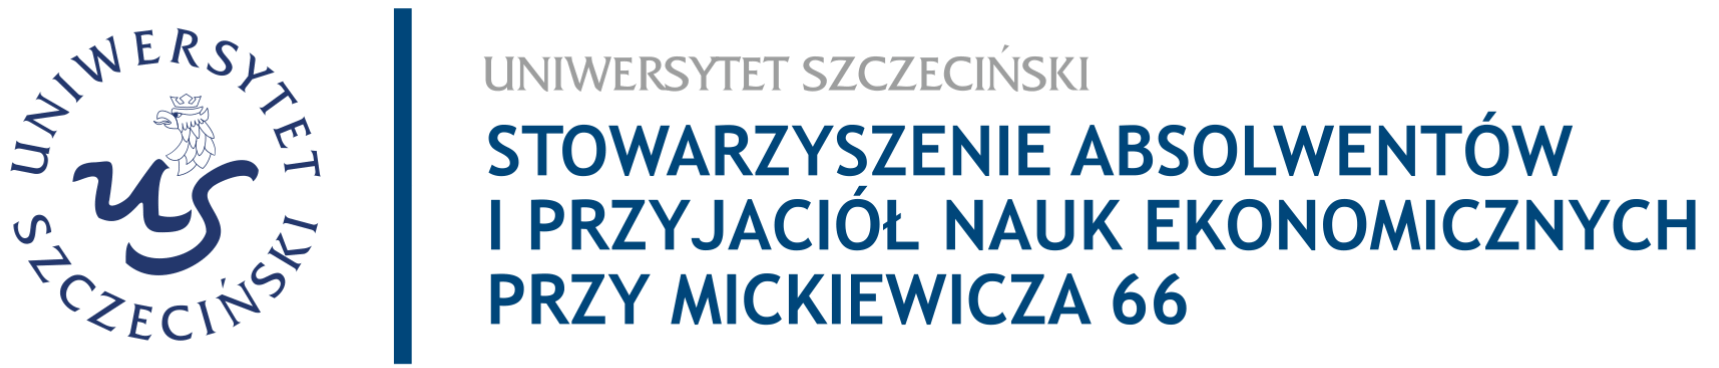 Logo: Stowarzyszenie Absolwentów i przyjaciół Nauk Ekonomicznych przy Mickiewicza 66